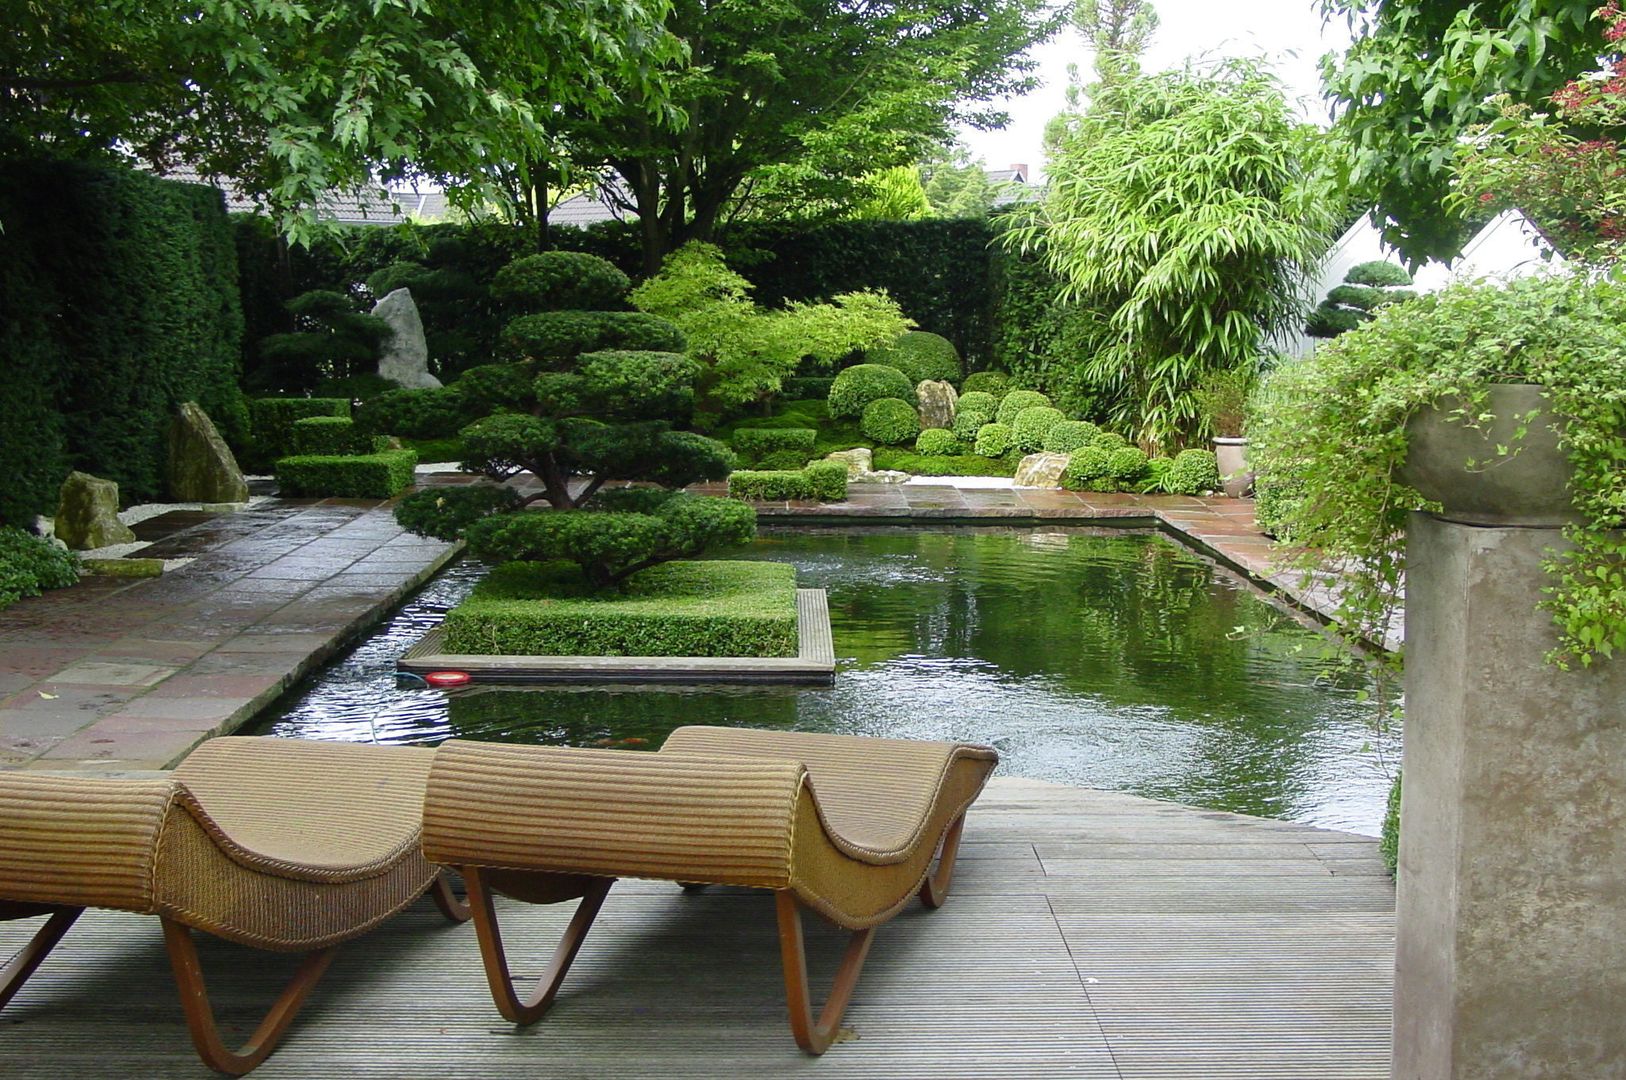 Japangarten mit Koiteich in Bremerhaven, japan-garten-kultur japan-garten-kultur 에클레틱 정원